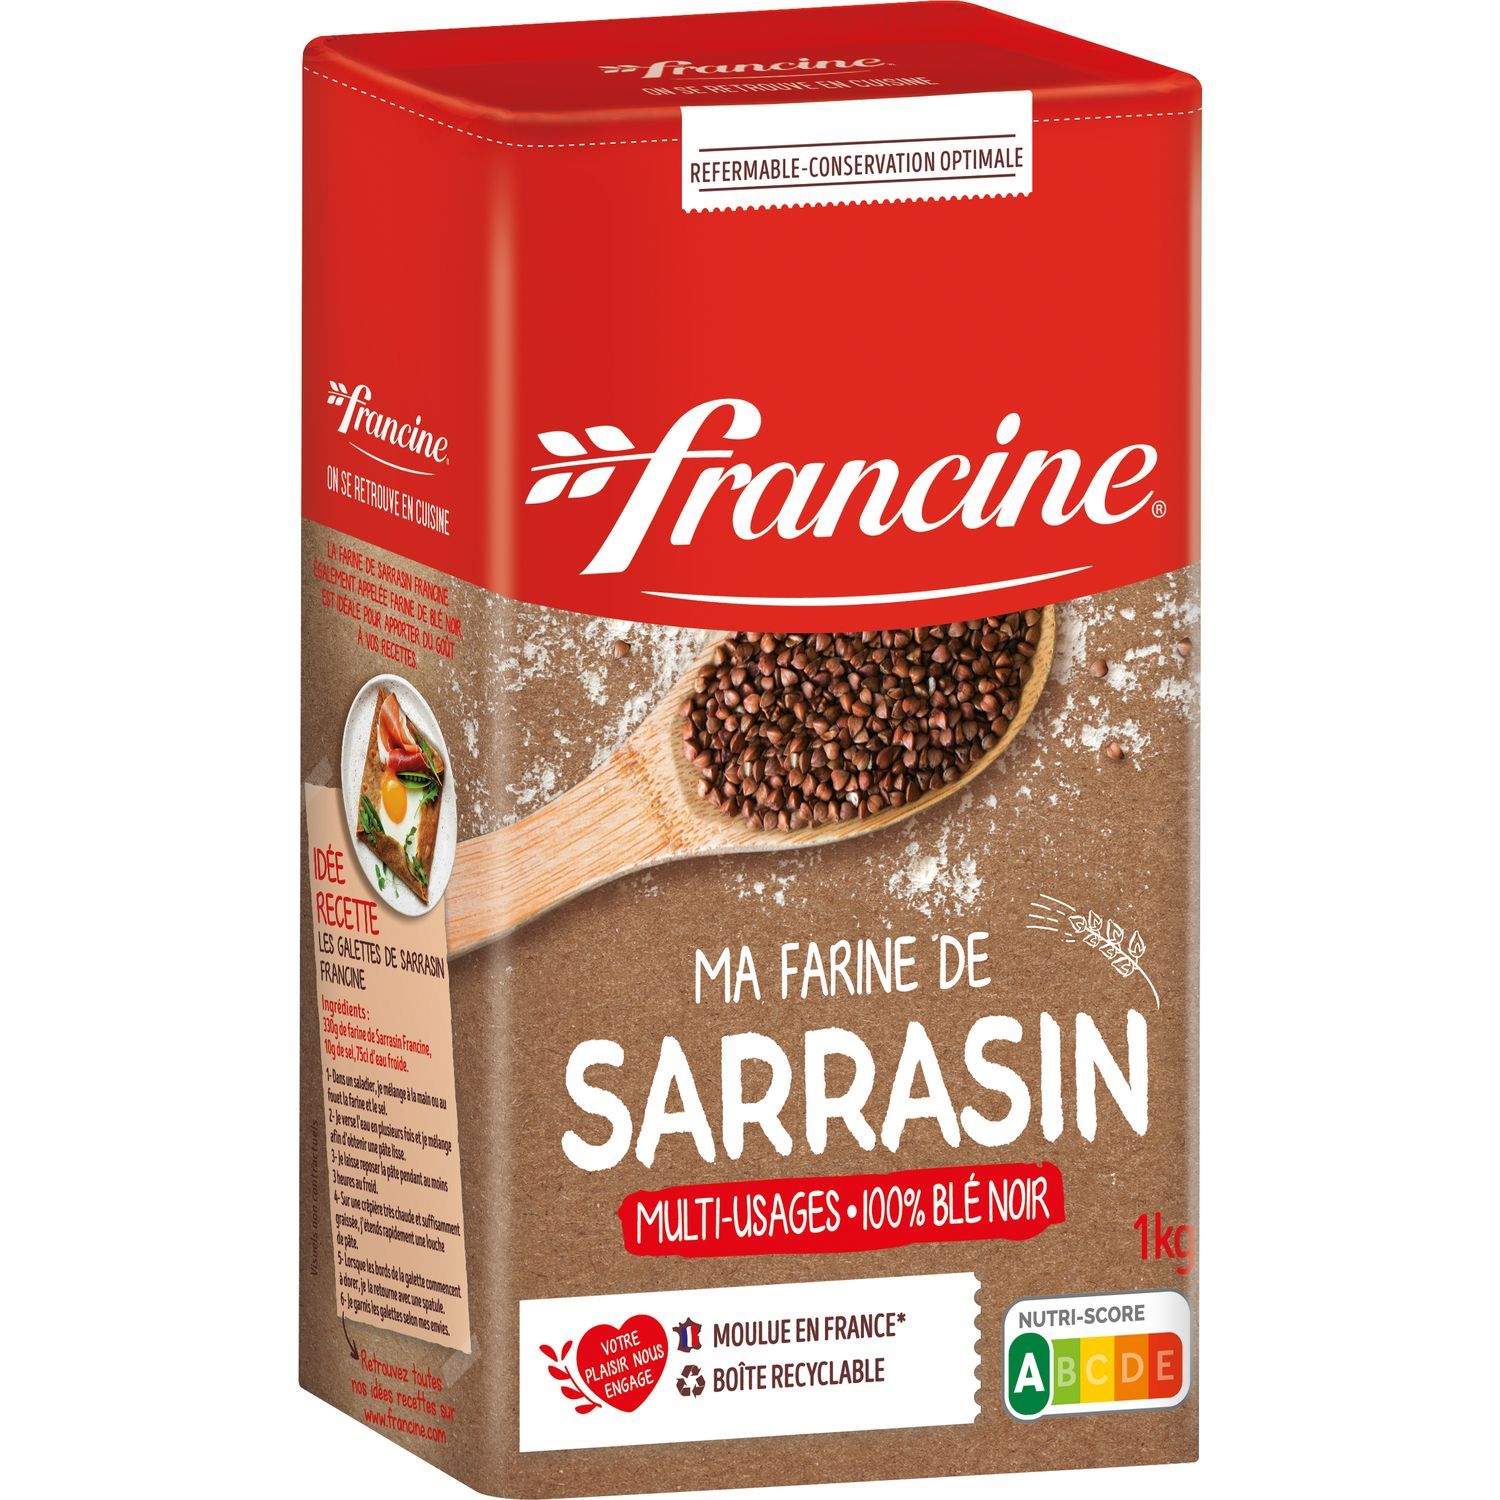 La farine de sarrasin : l'incontournable appelée blé noir